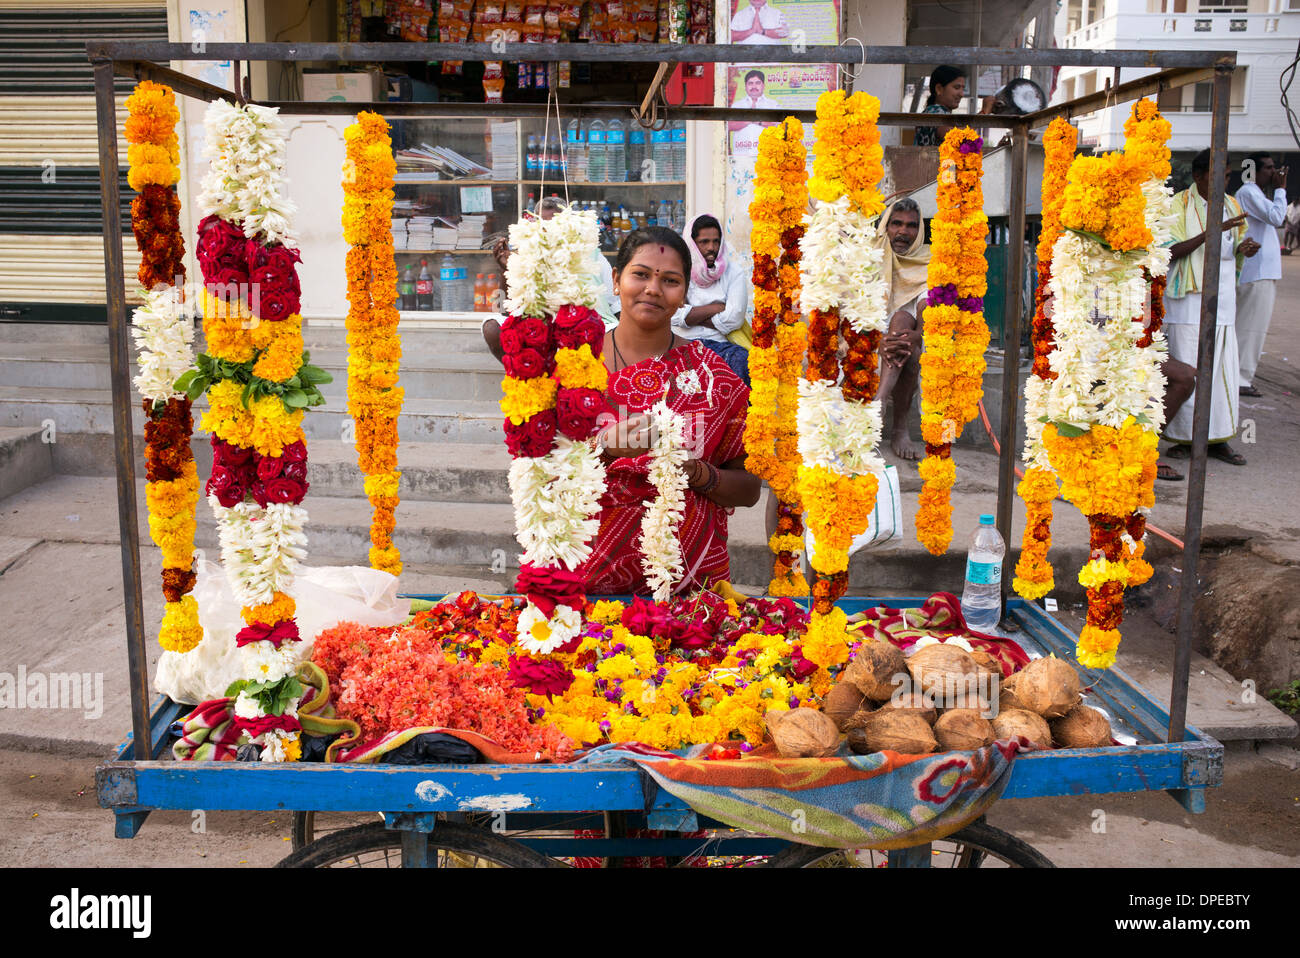 Femme indienne la vente de fleurs et de guirlandes pour hindu temple culte. Puttaparthi, Andhra Pradesh, Inde Banque D'Images